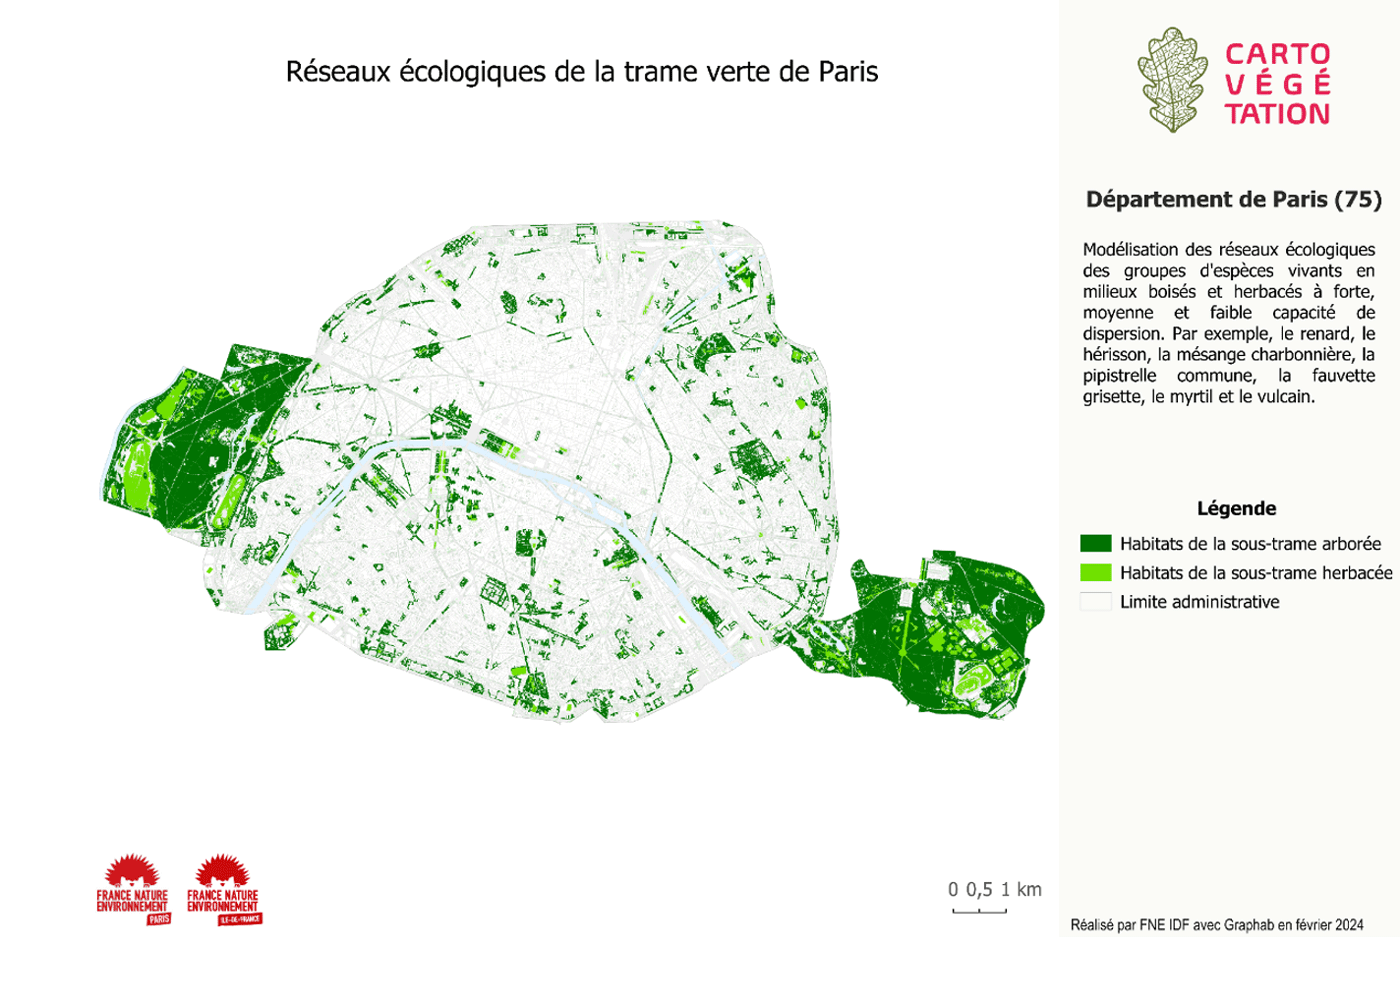 Réseaux écologiques de la trame verte de Paris